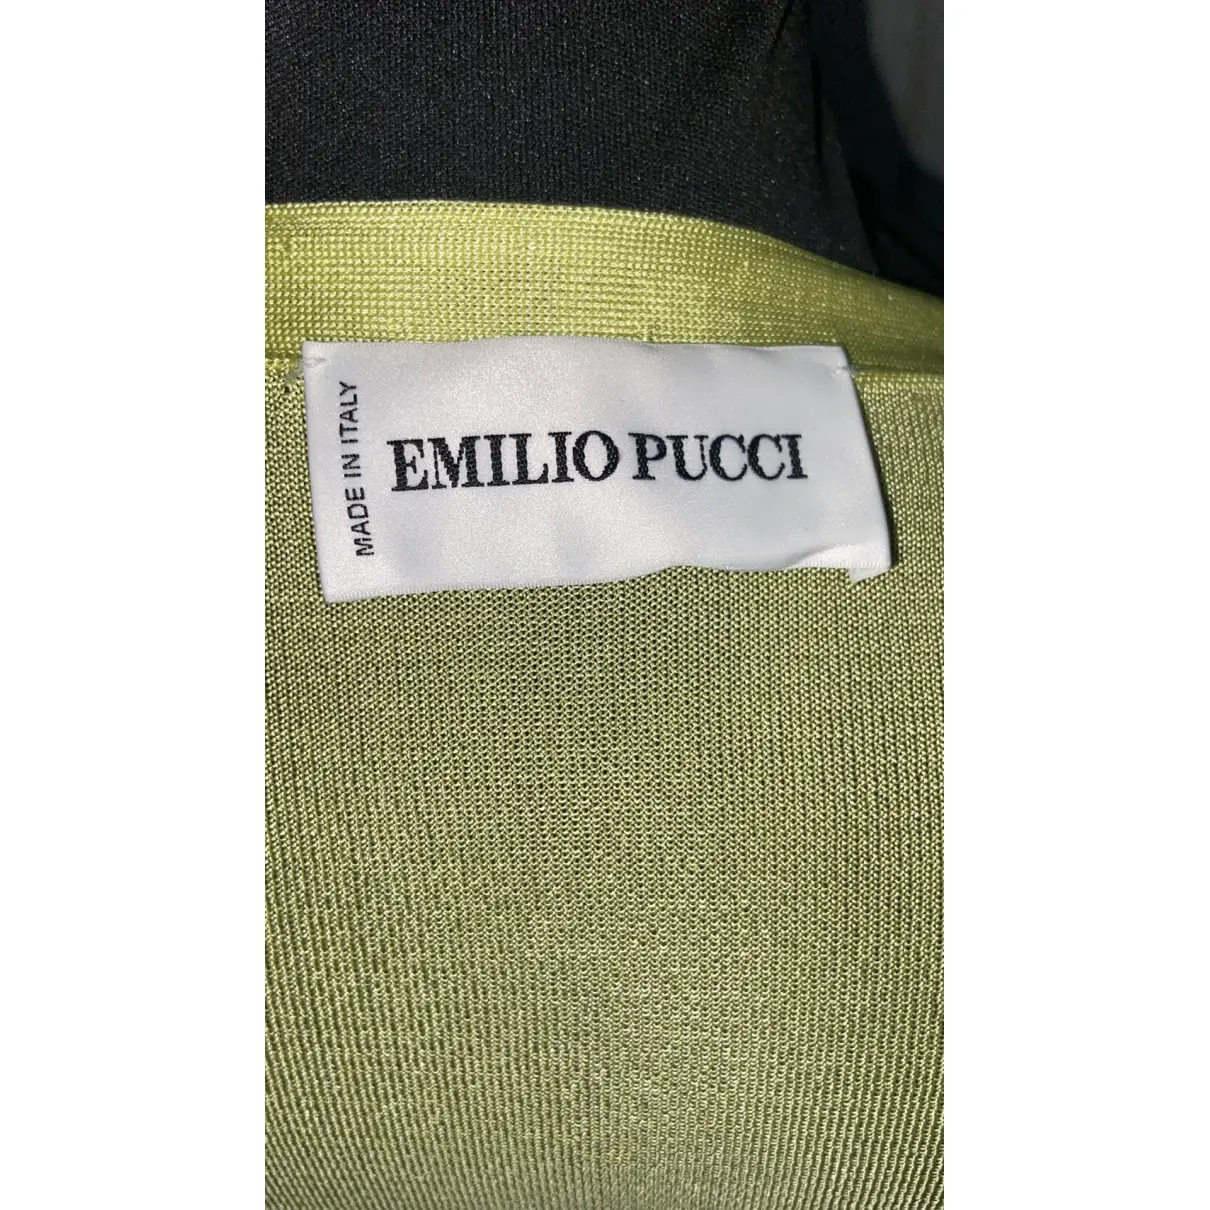 Buy Emilio Pucci Cardigan online